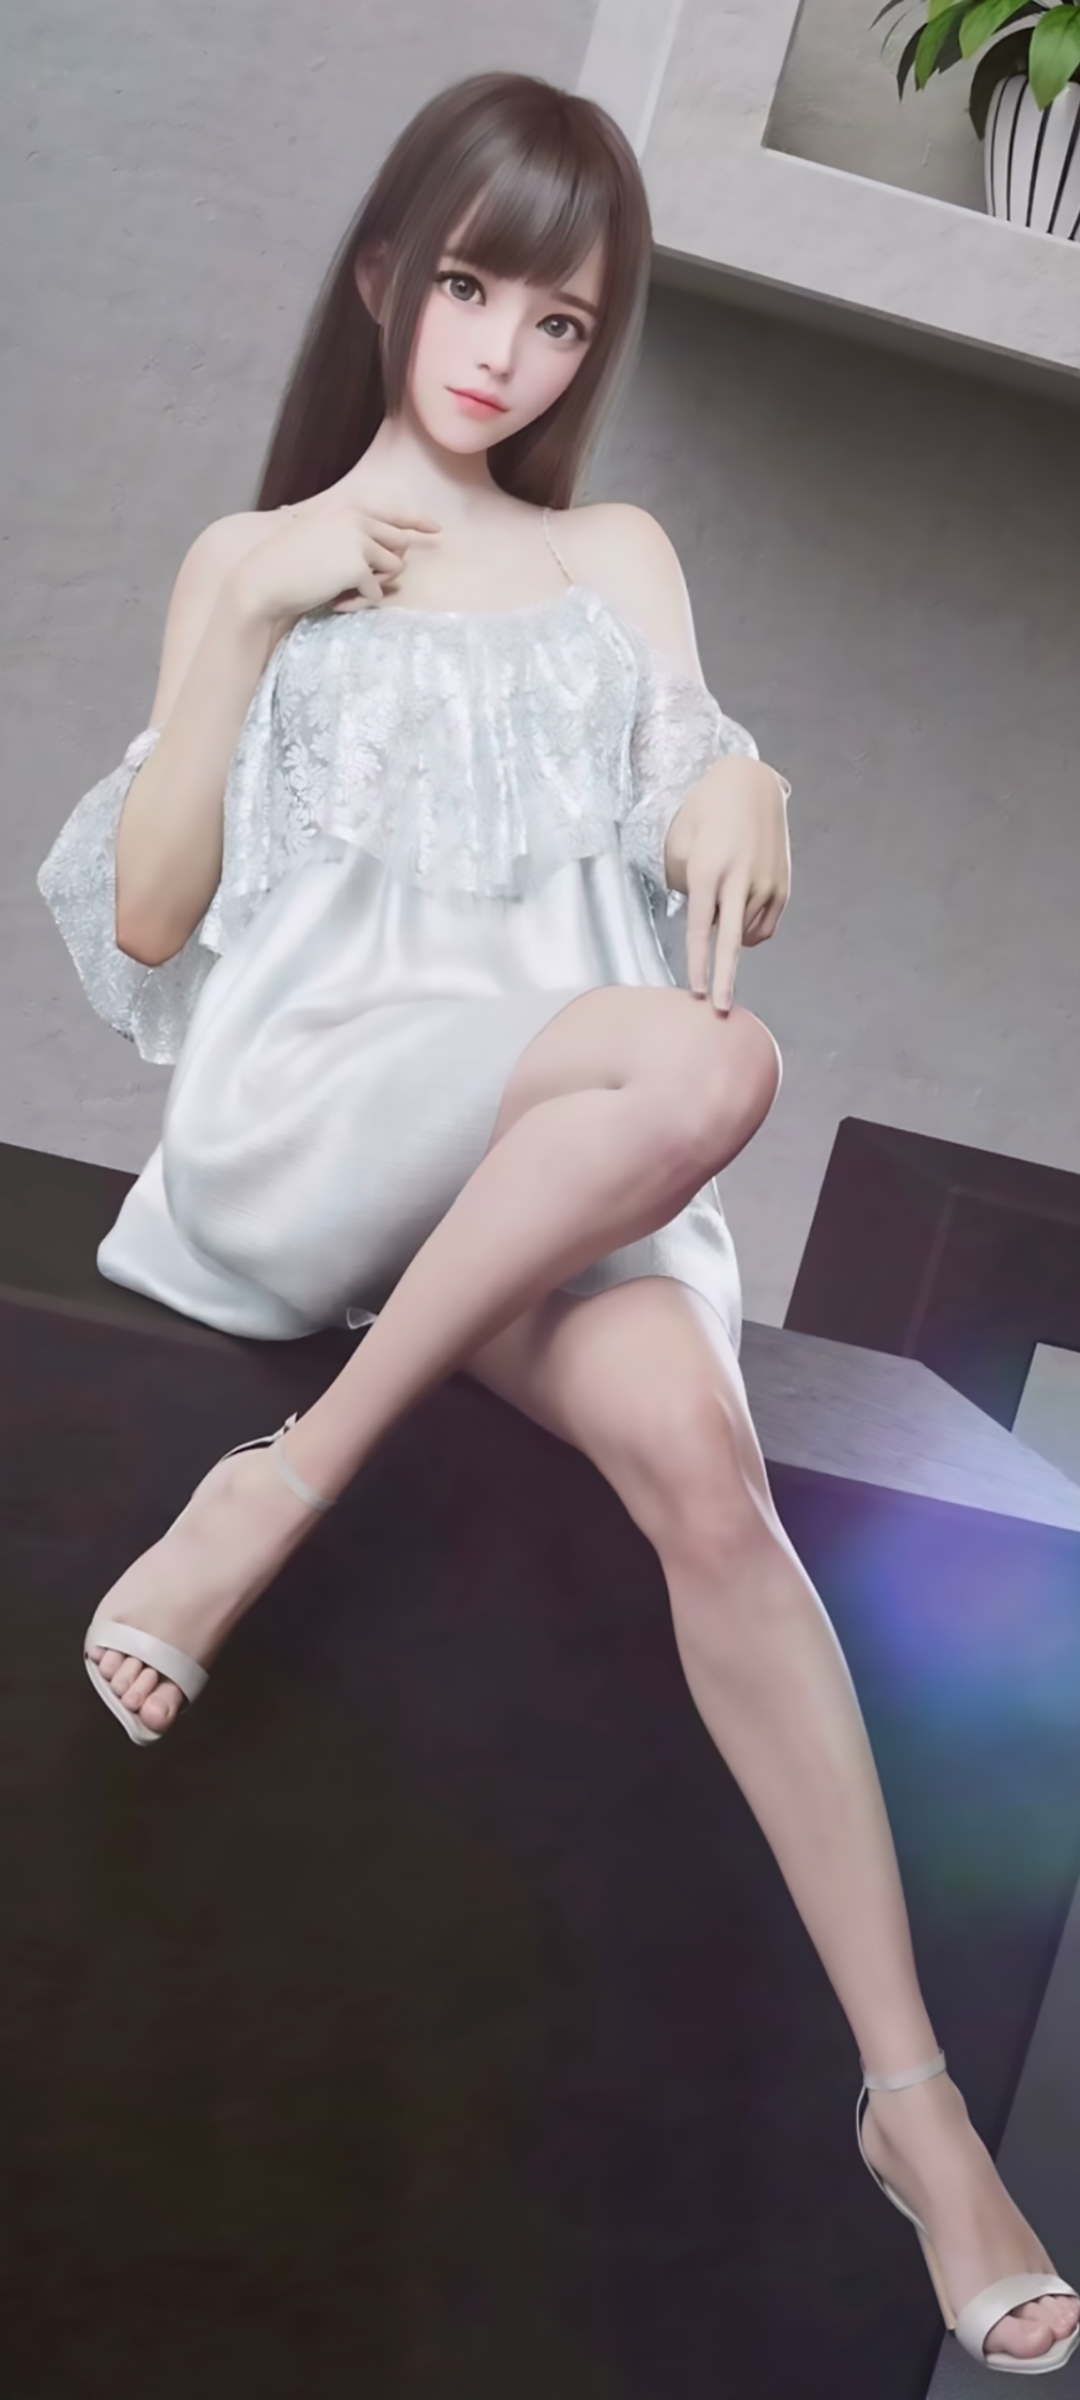 免费下载，3D可爱动漫美女美腿白裙手机壁纸，精选高清动漫风格